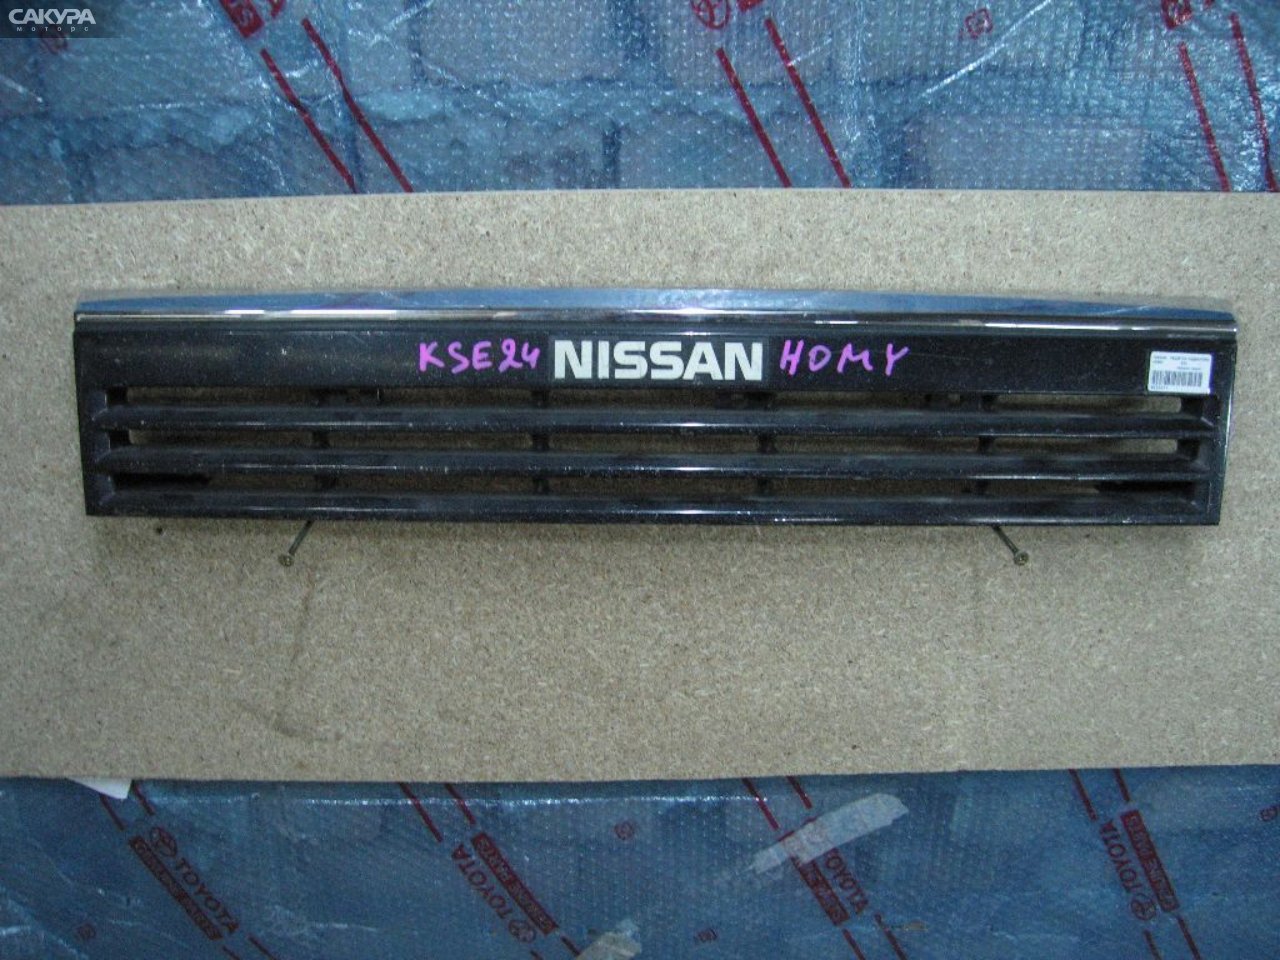 Решетка радиатора Nissan Homy KSE24: купить в Сакура Абакан.